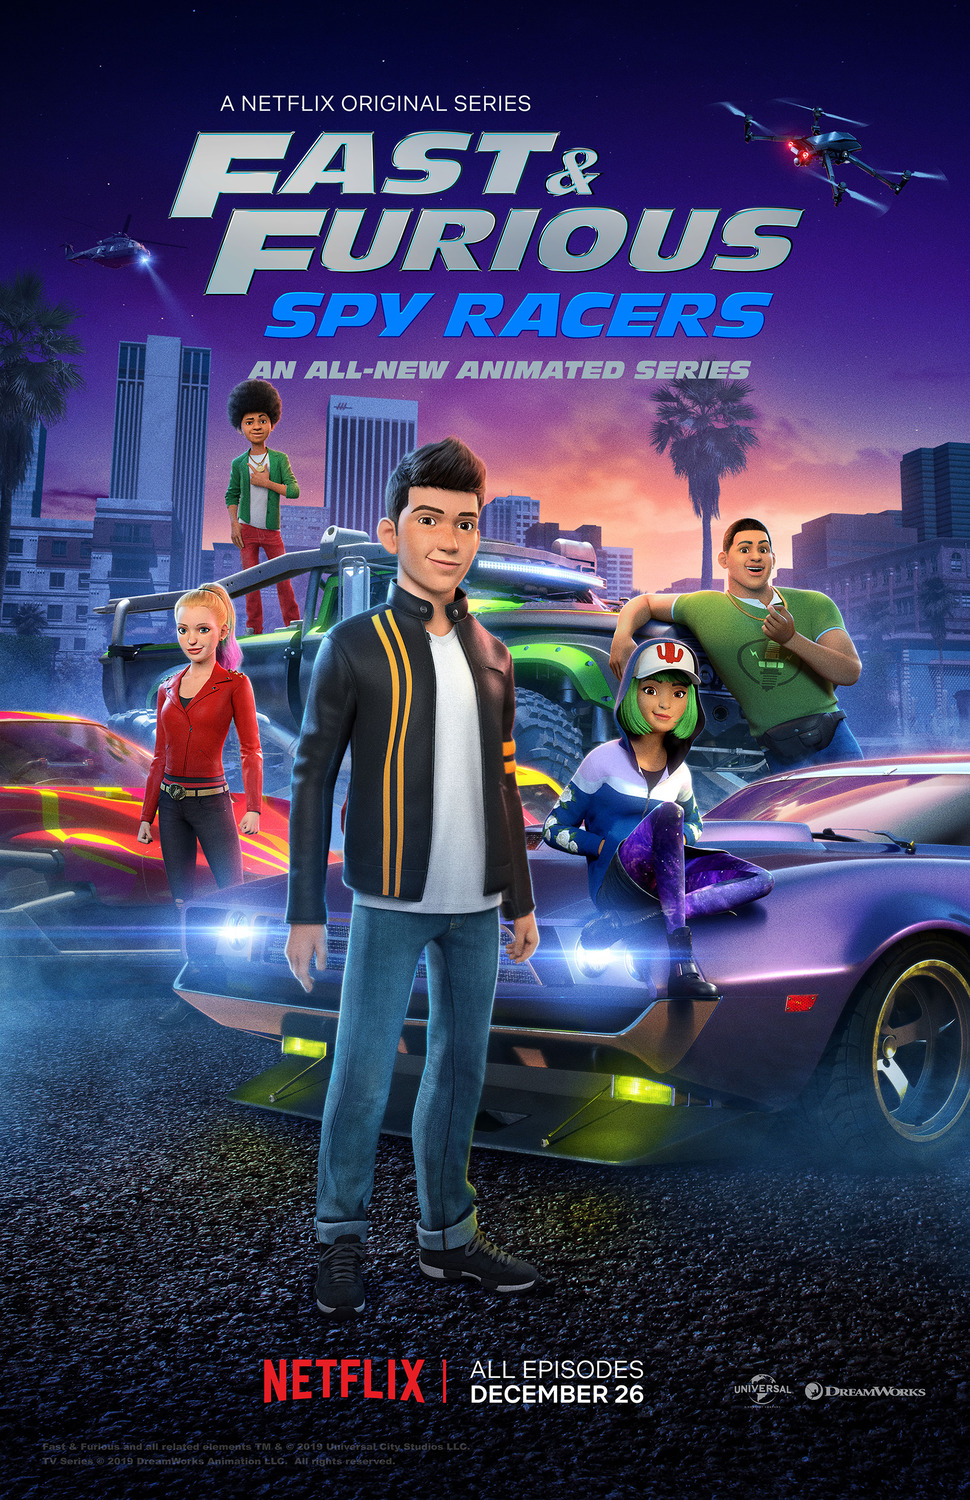 ดูหนังออนไลน์ฟรี Fast & Furious Spy Racers (2019) Season1 EP8 เร็ว…แรง ทะลุนรก ซิ่งสยบโลก ตอนที่ 8 (พากย์ไทย)